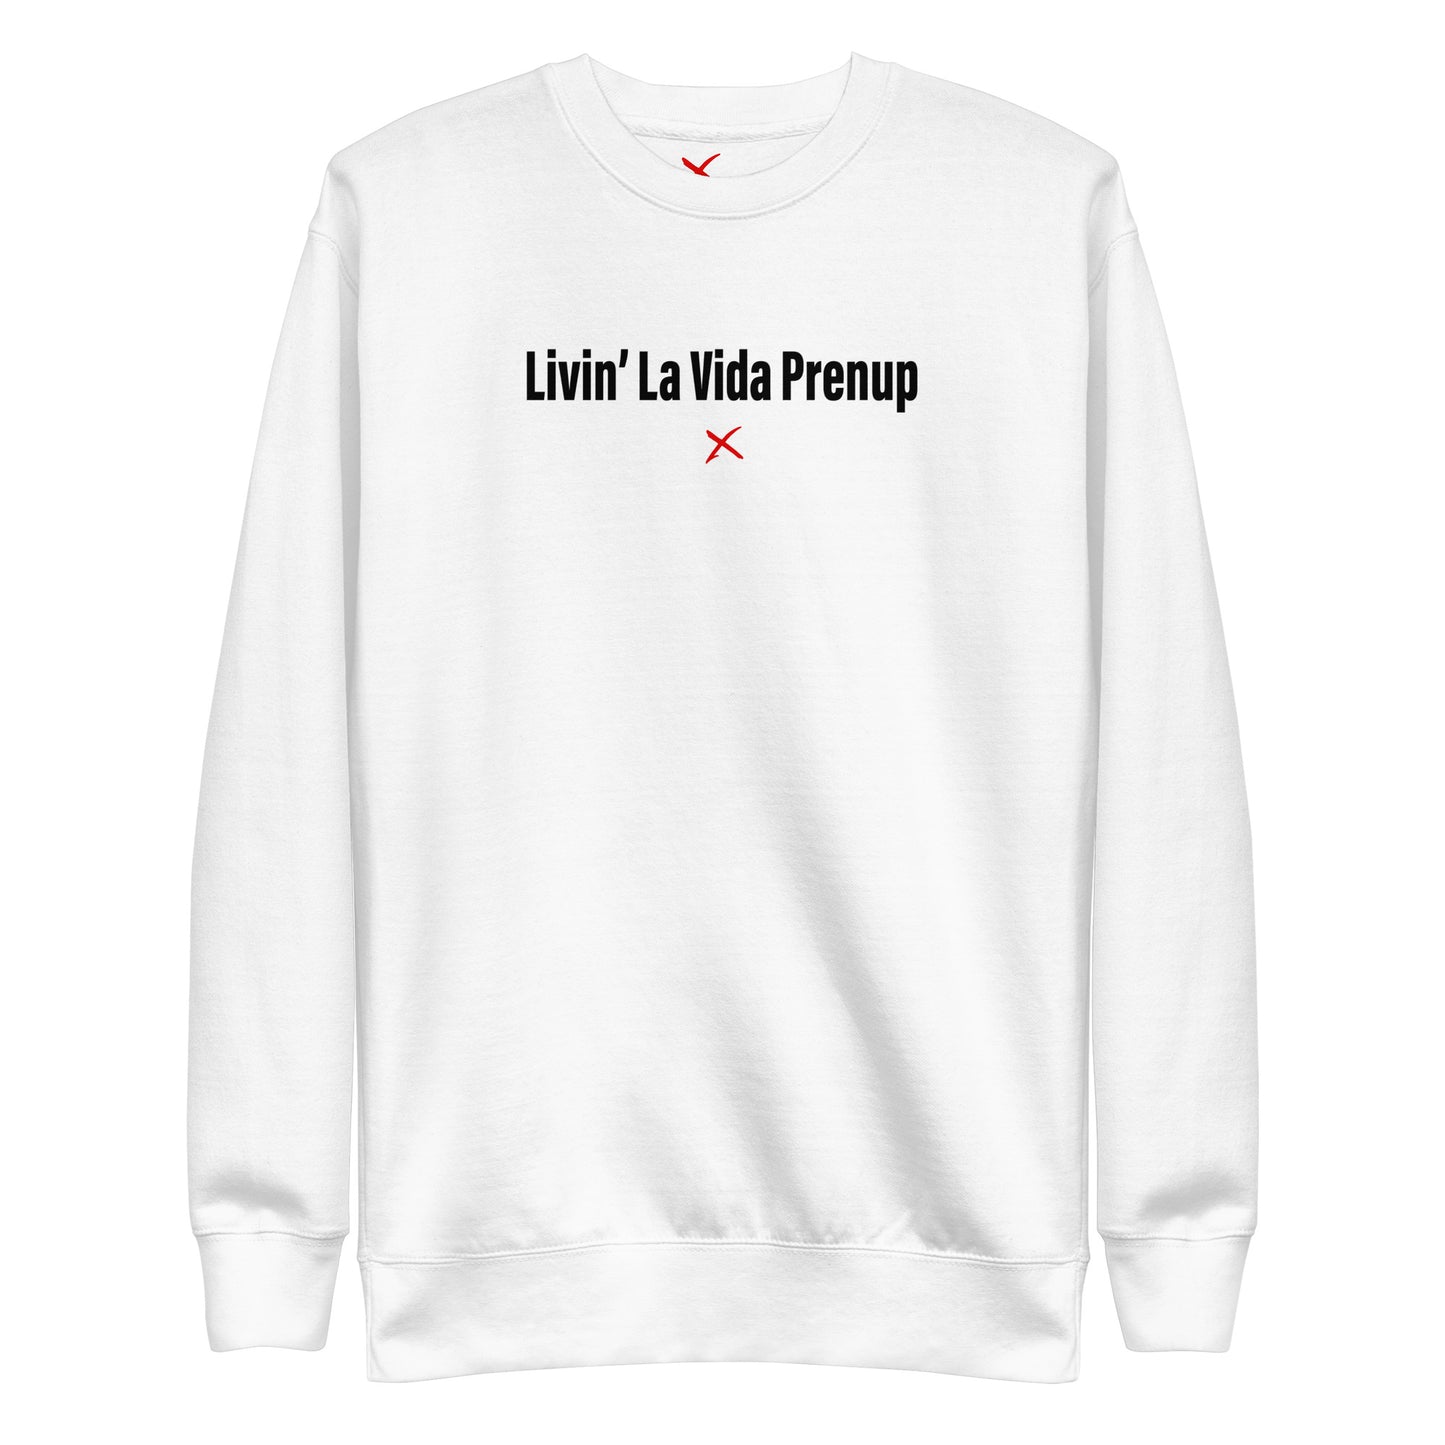 Livin' La Vida Prenup - Sweatshirt